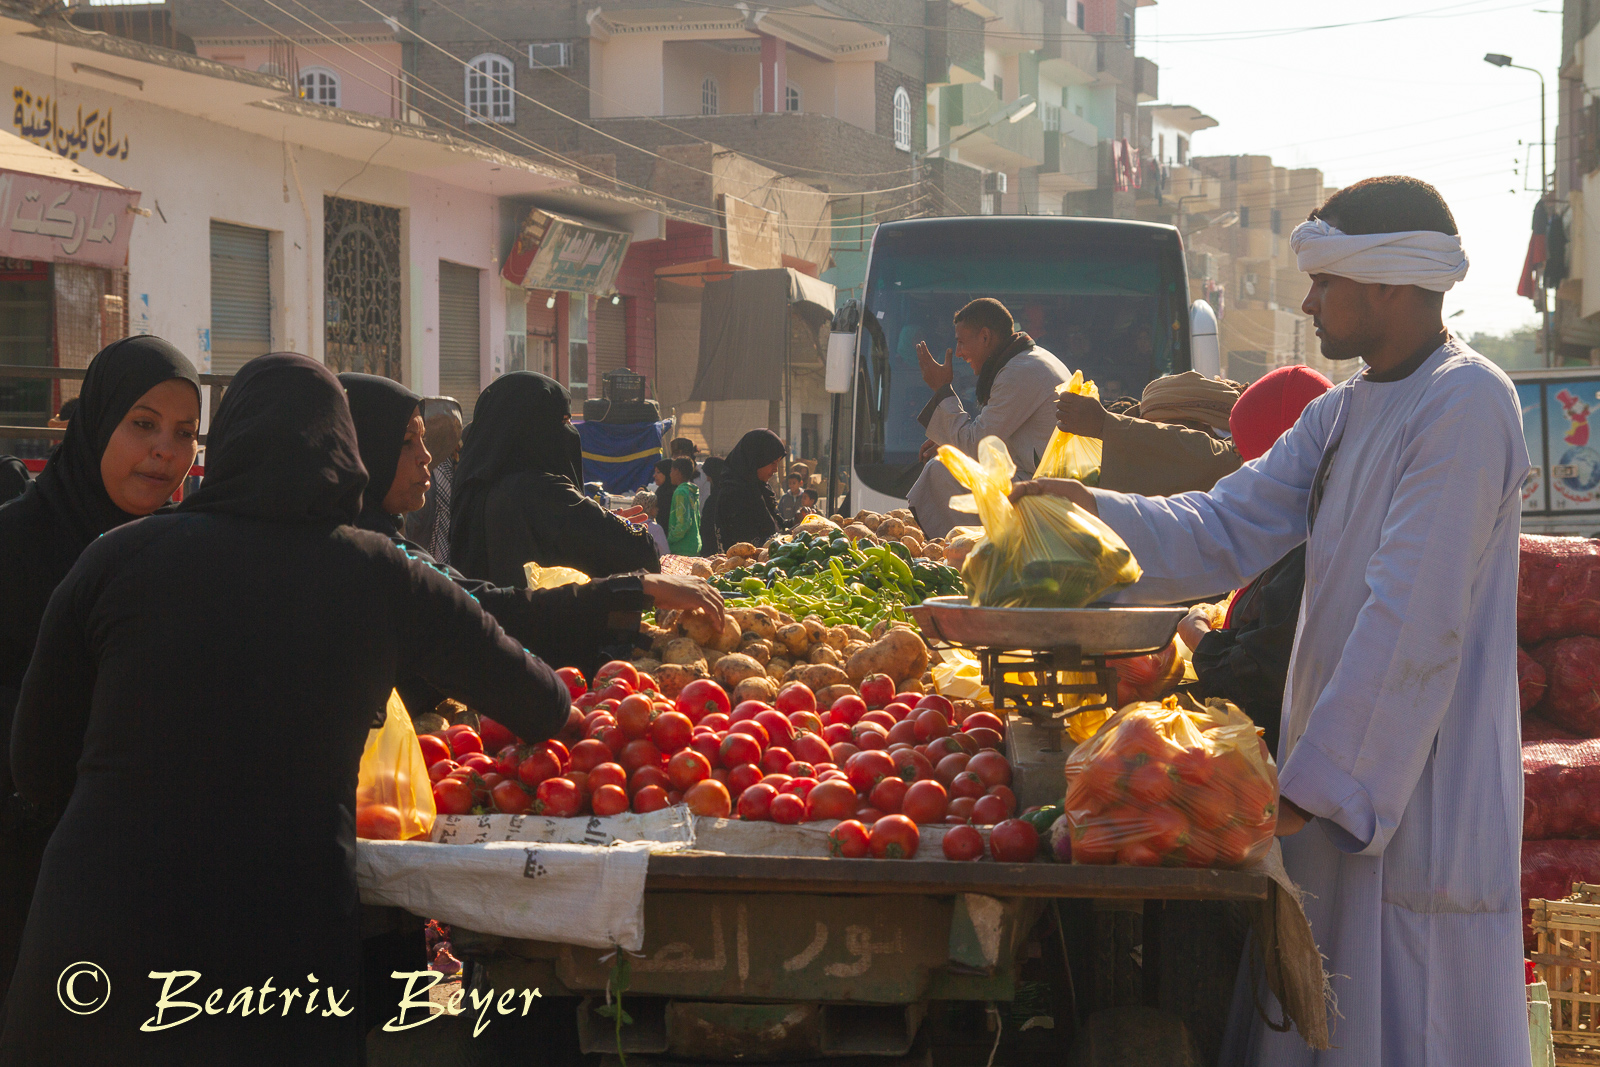 Dienstag – der Gemüsemarkt – mein letzter halber Tag in Luxor